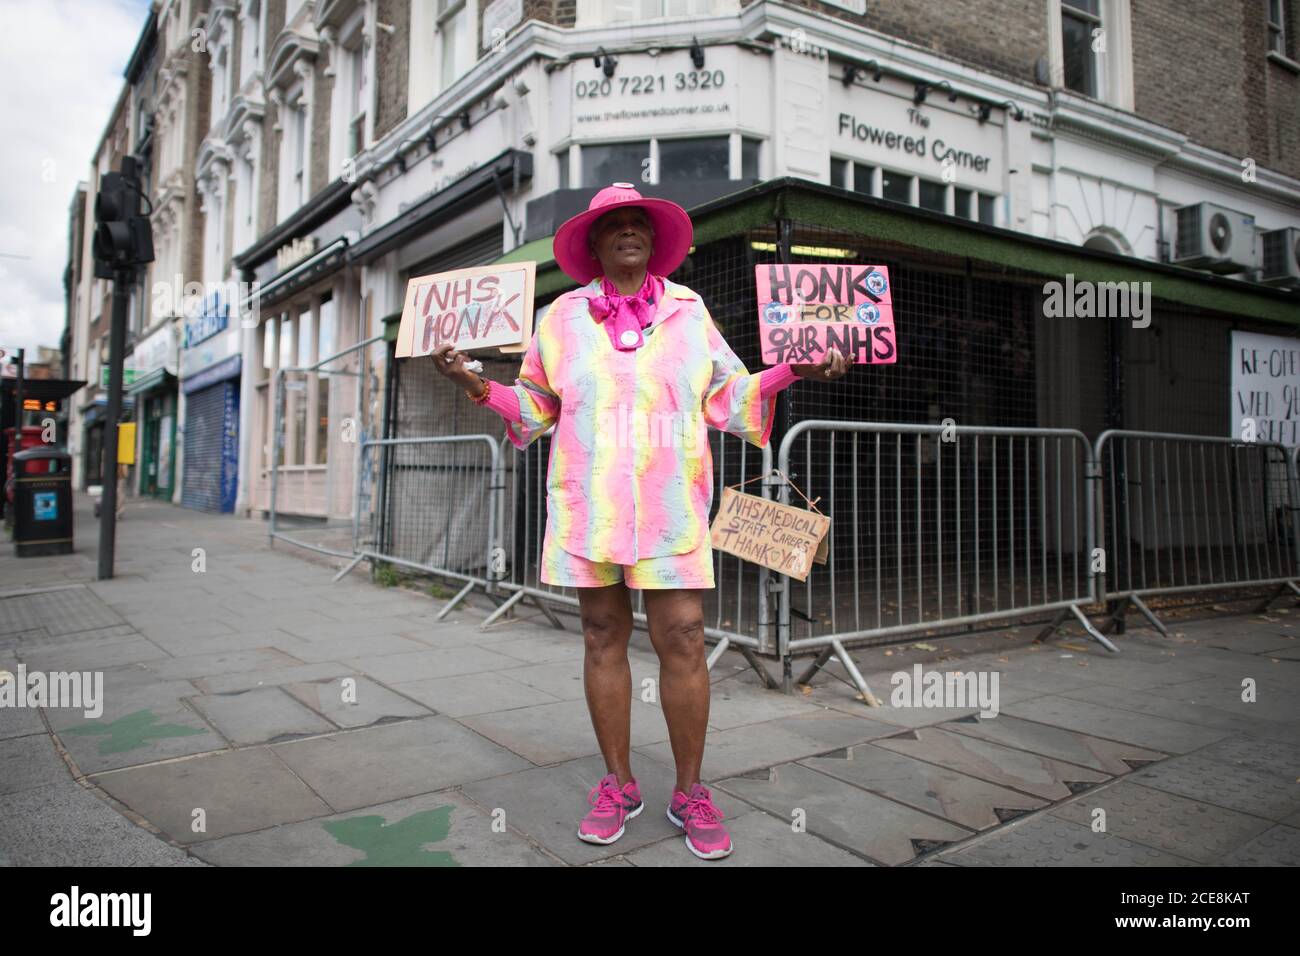 Ein Karnevalsbesucher in Notting Hill, London, nachdem der Karneval von 2020 wegen der Coronavirus-Pandemie abgesagt wurde, wobei die Ereignisse online gestreamt wurden. Stockfoto